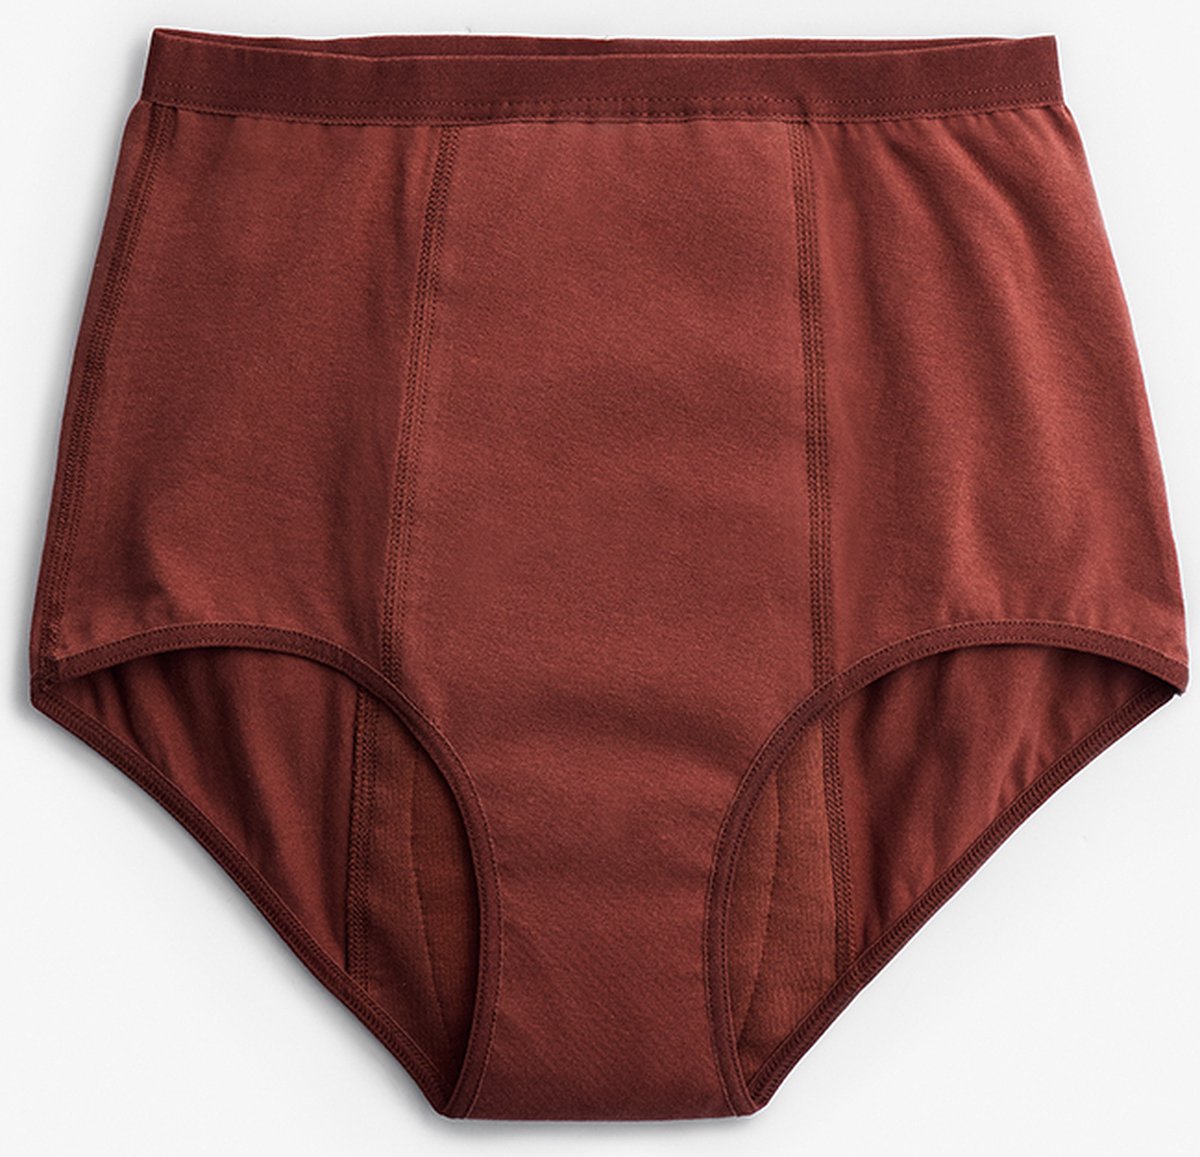 ImseVimse - Imse - menstruatieondergoed - High Waist period underwear - hevige menstruatie - XL - eur 48/50 - bruin